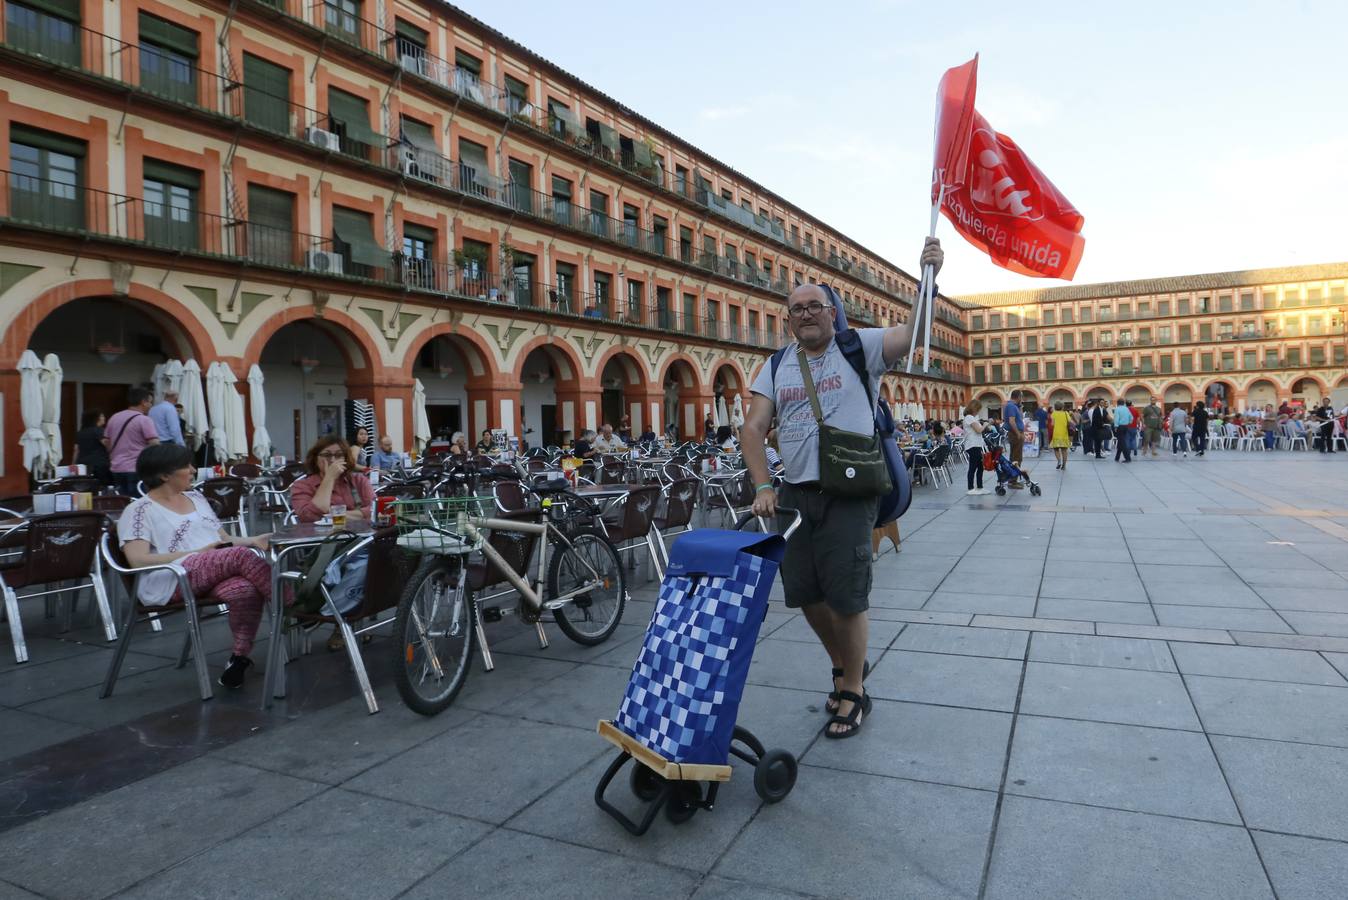 Las imágenes que dejó la campaña en Córdoba